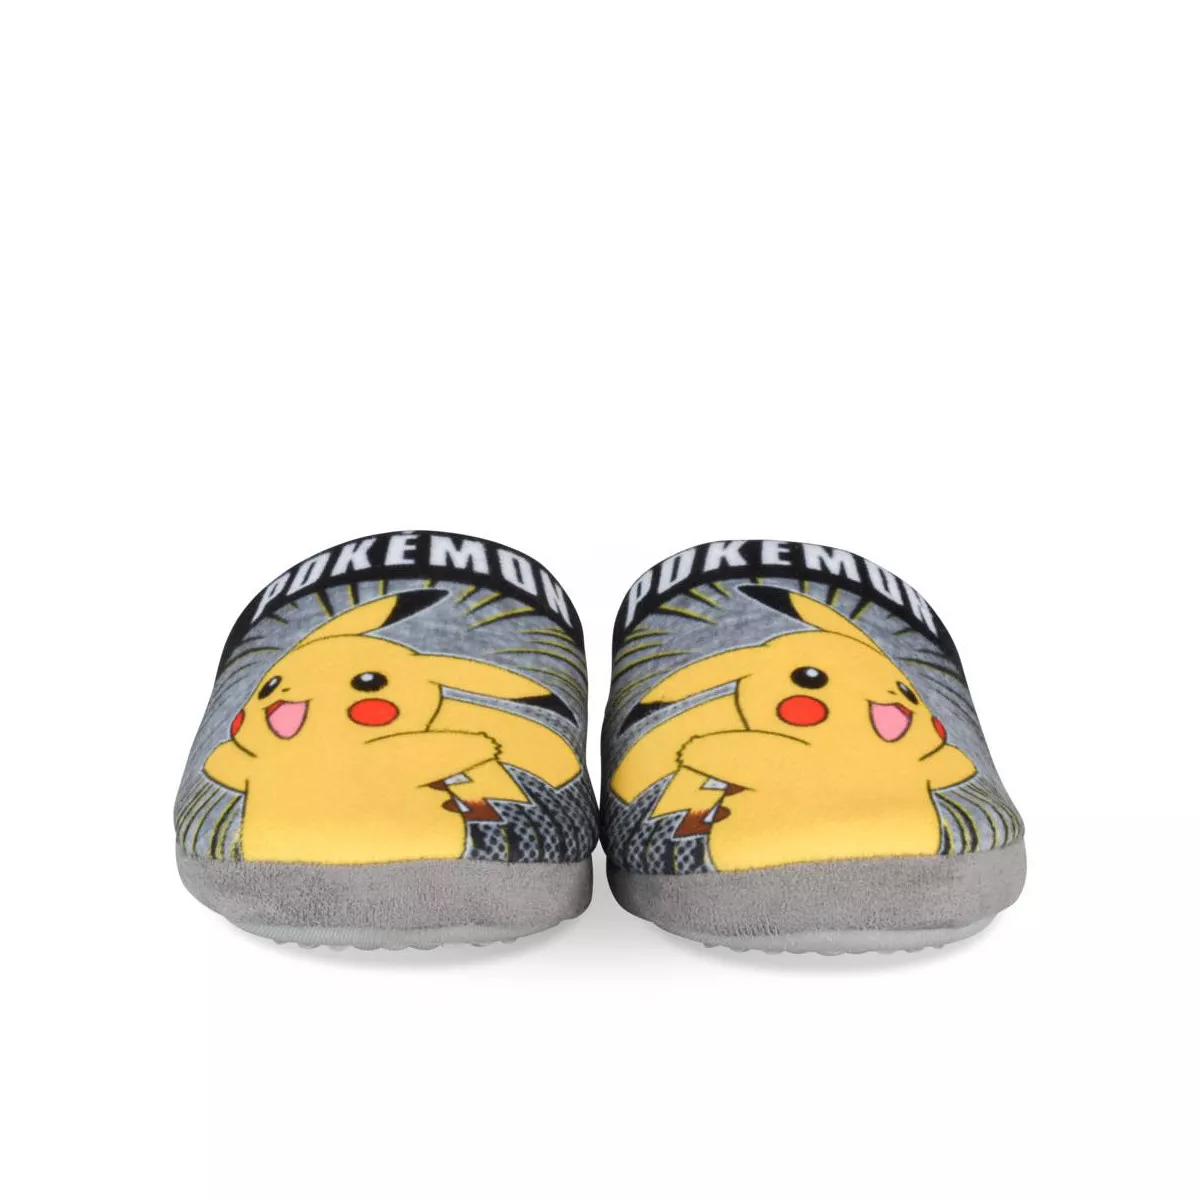 Chaussons Pokémon : Pantoufles Pikachu adulte homme/femme – La